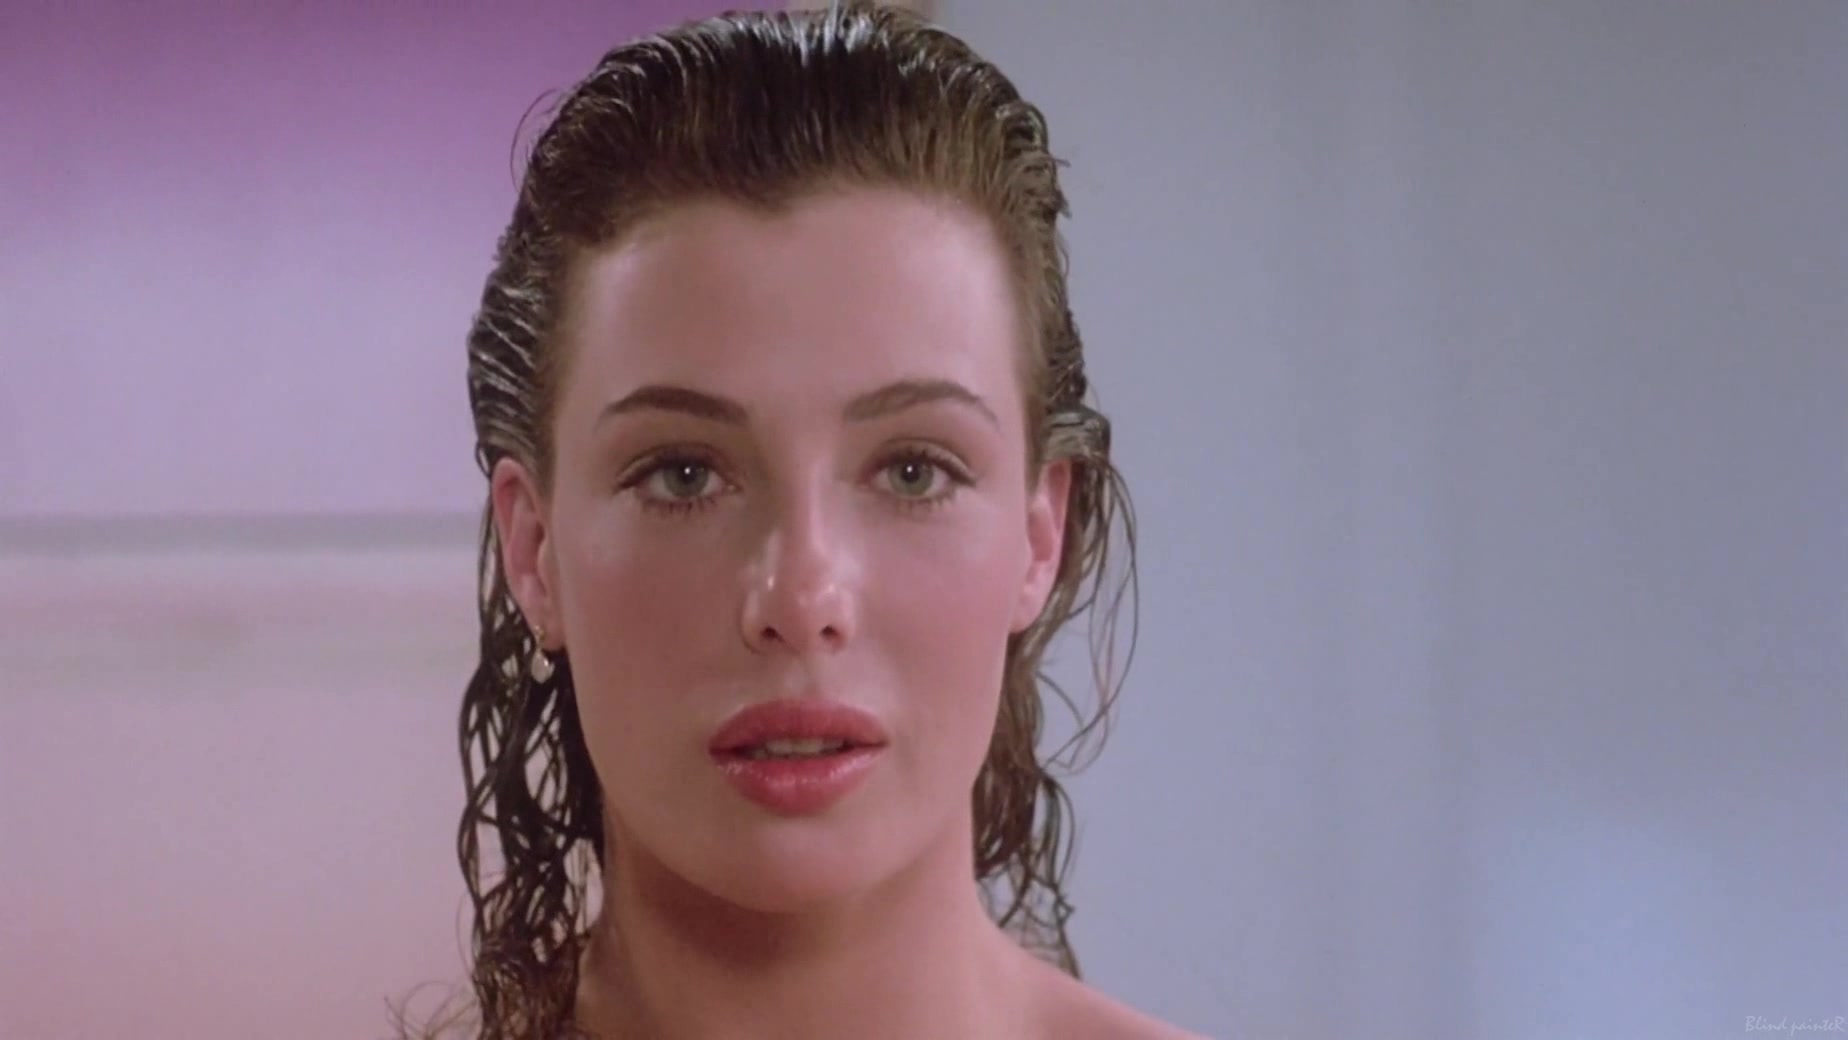 1848px x 1040px - Kelly LeBrock nude - The Woman in Red (1984) Video Â» Best Sexy Scene Â»  HeroEro Tube